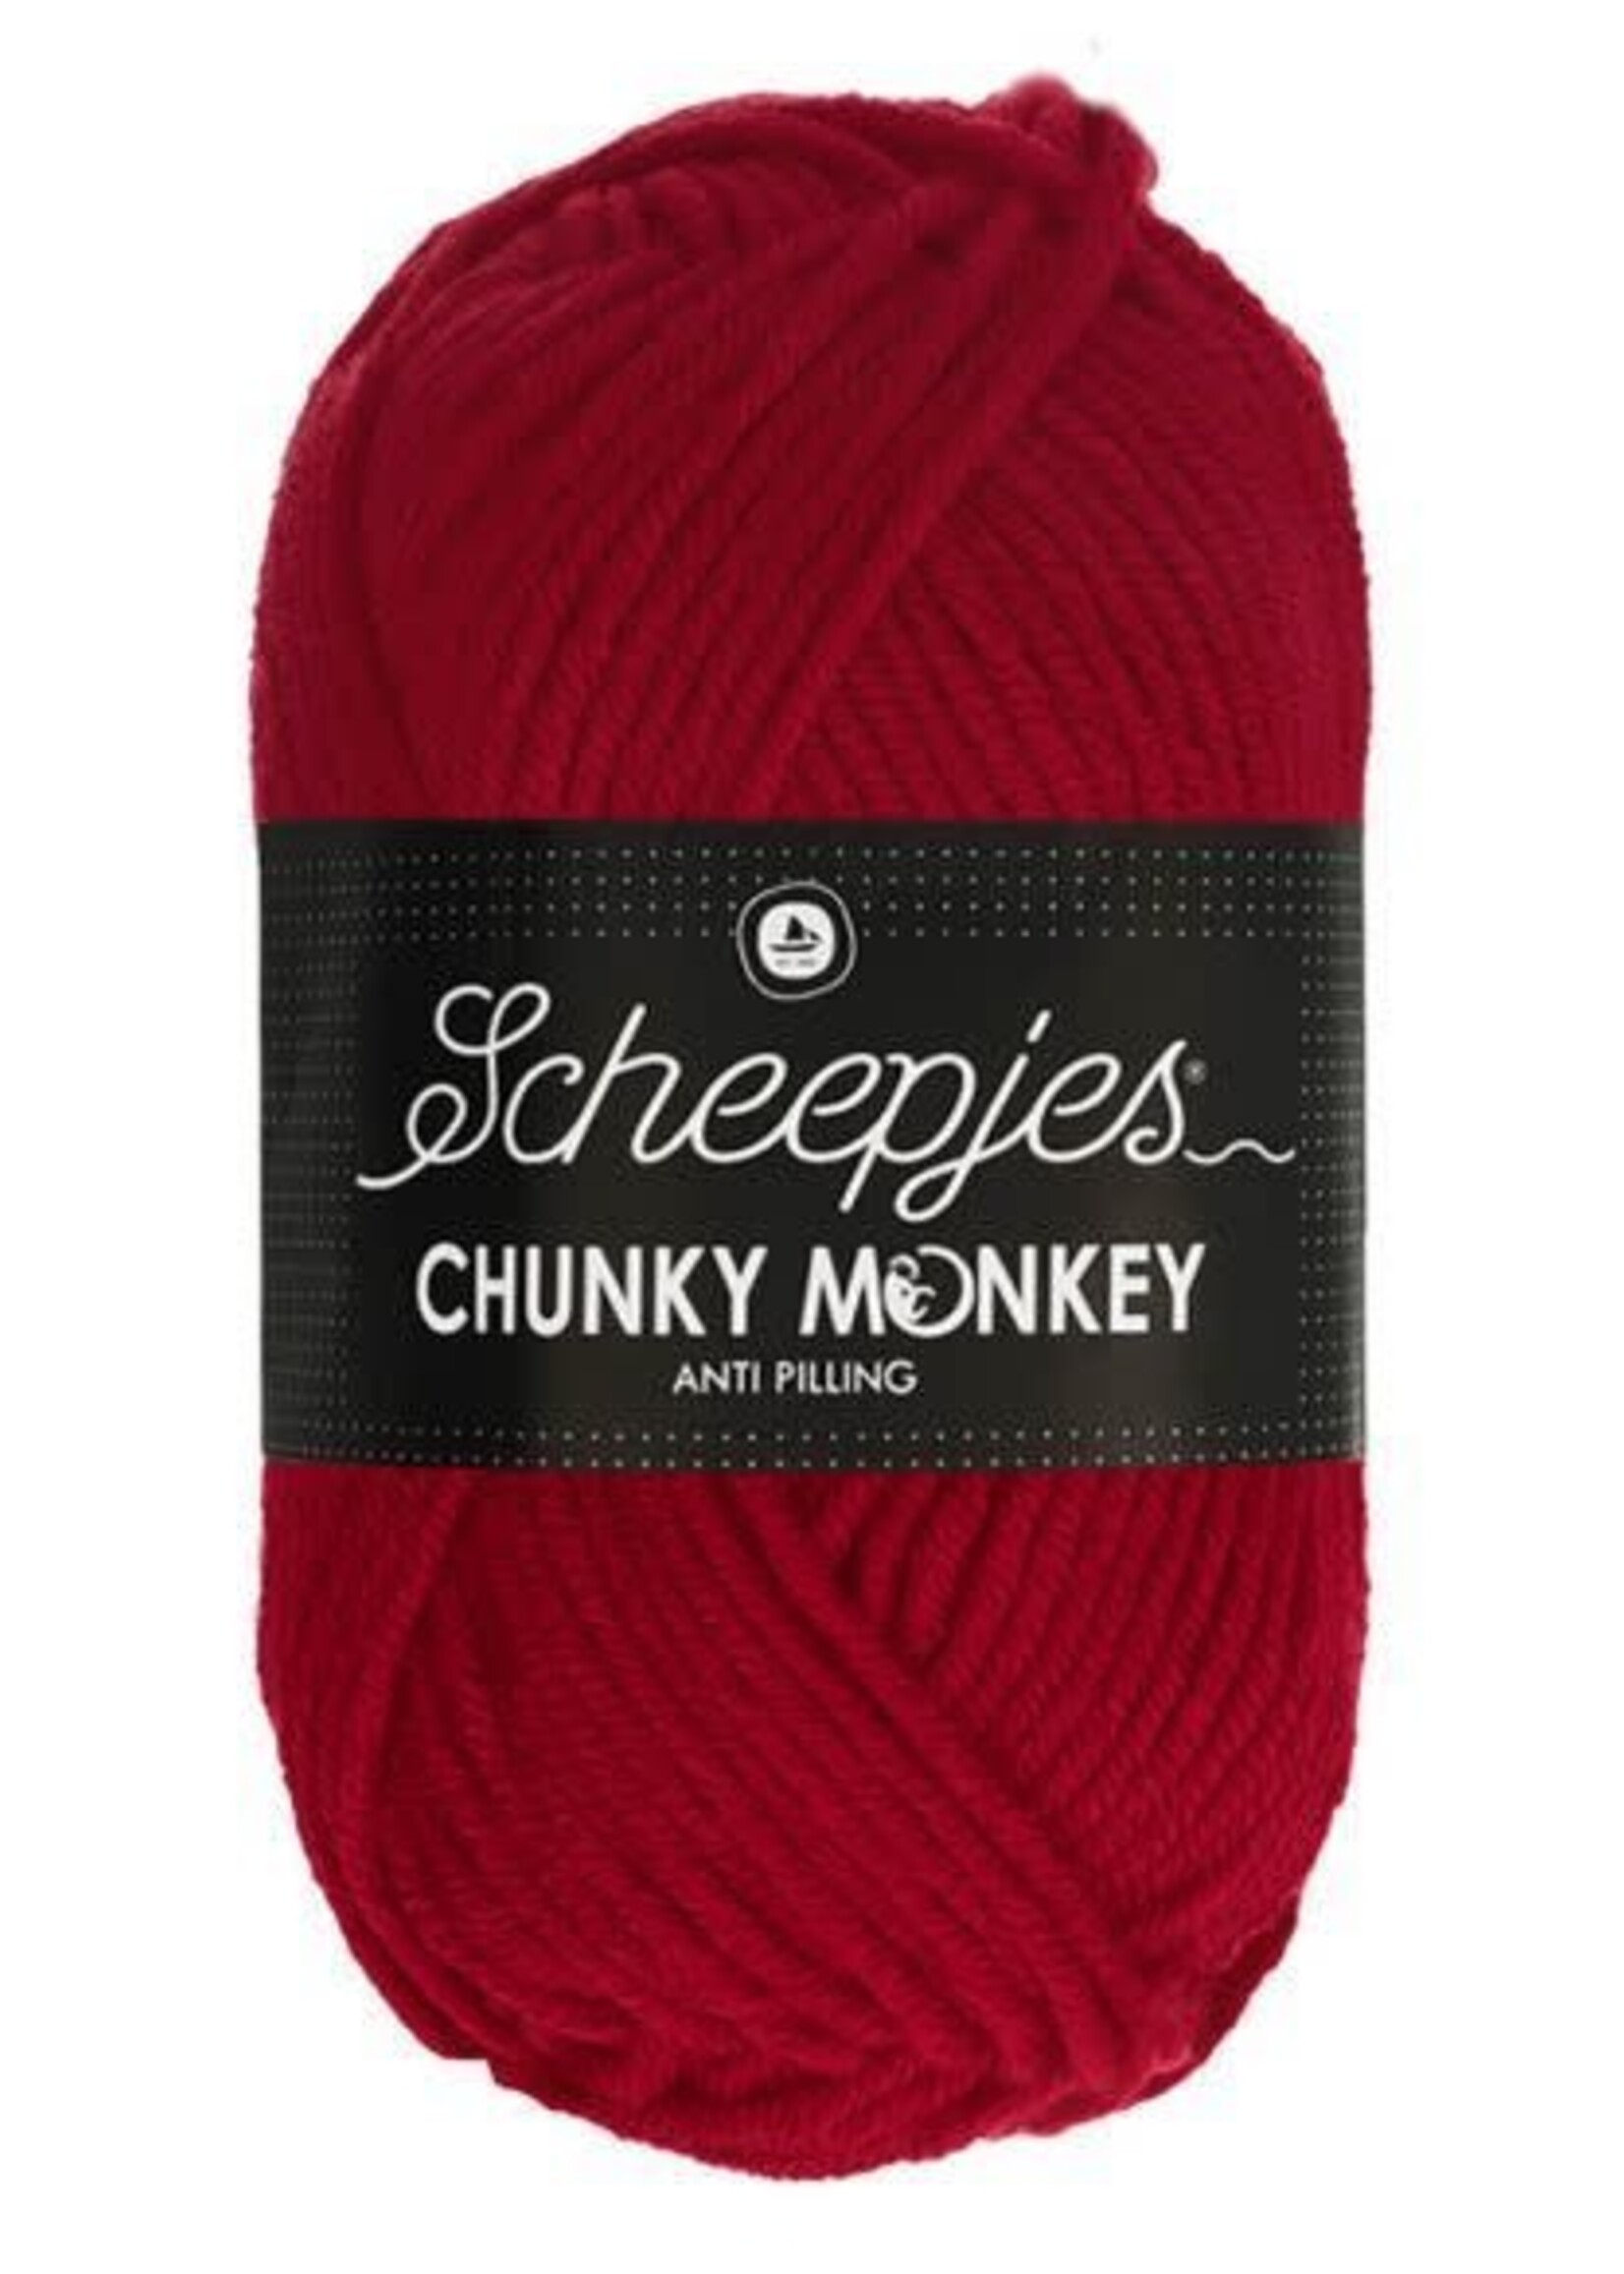 Scheepjes Chunky Monkey - Scheepjes  -1246 Cardinal